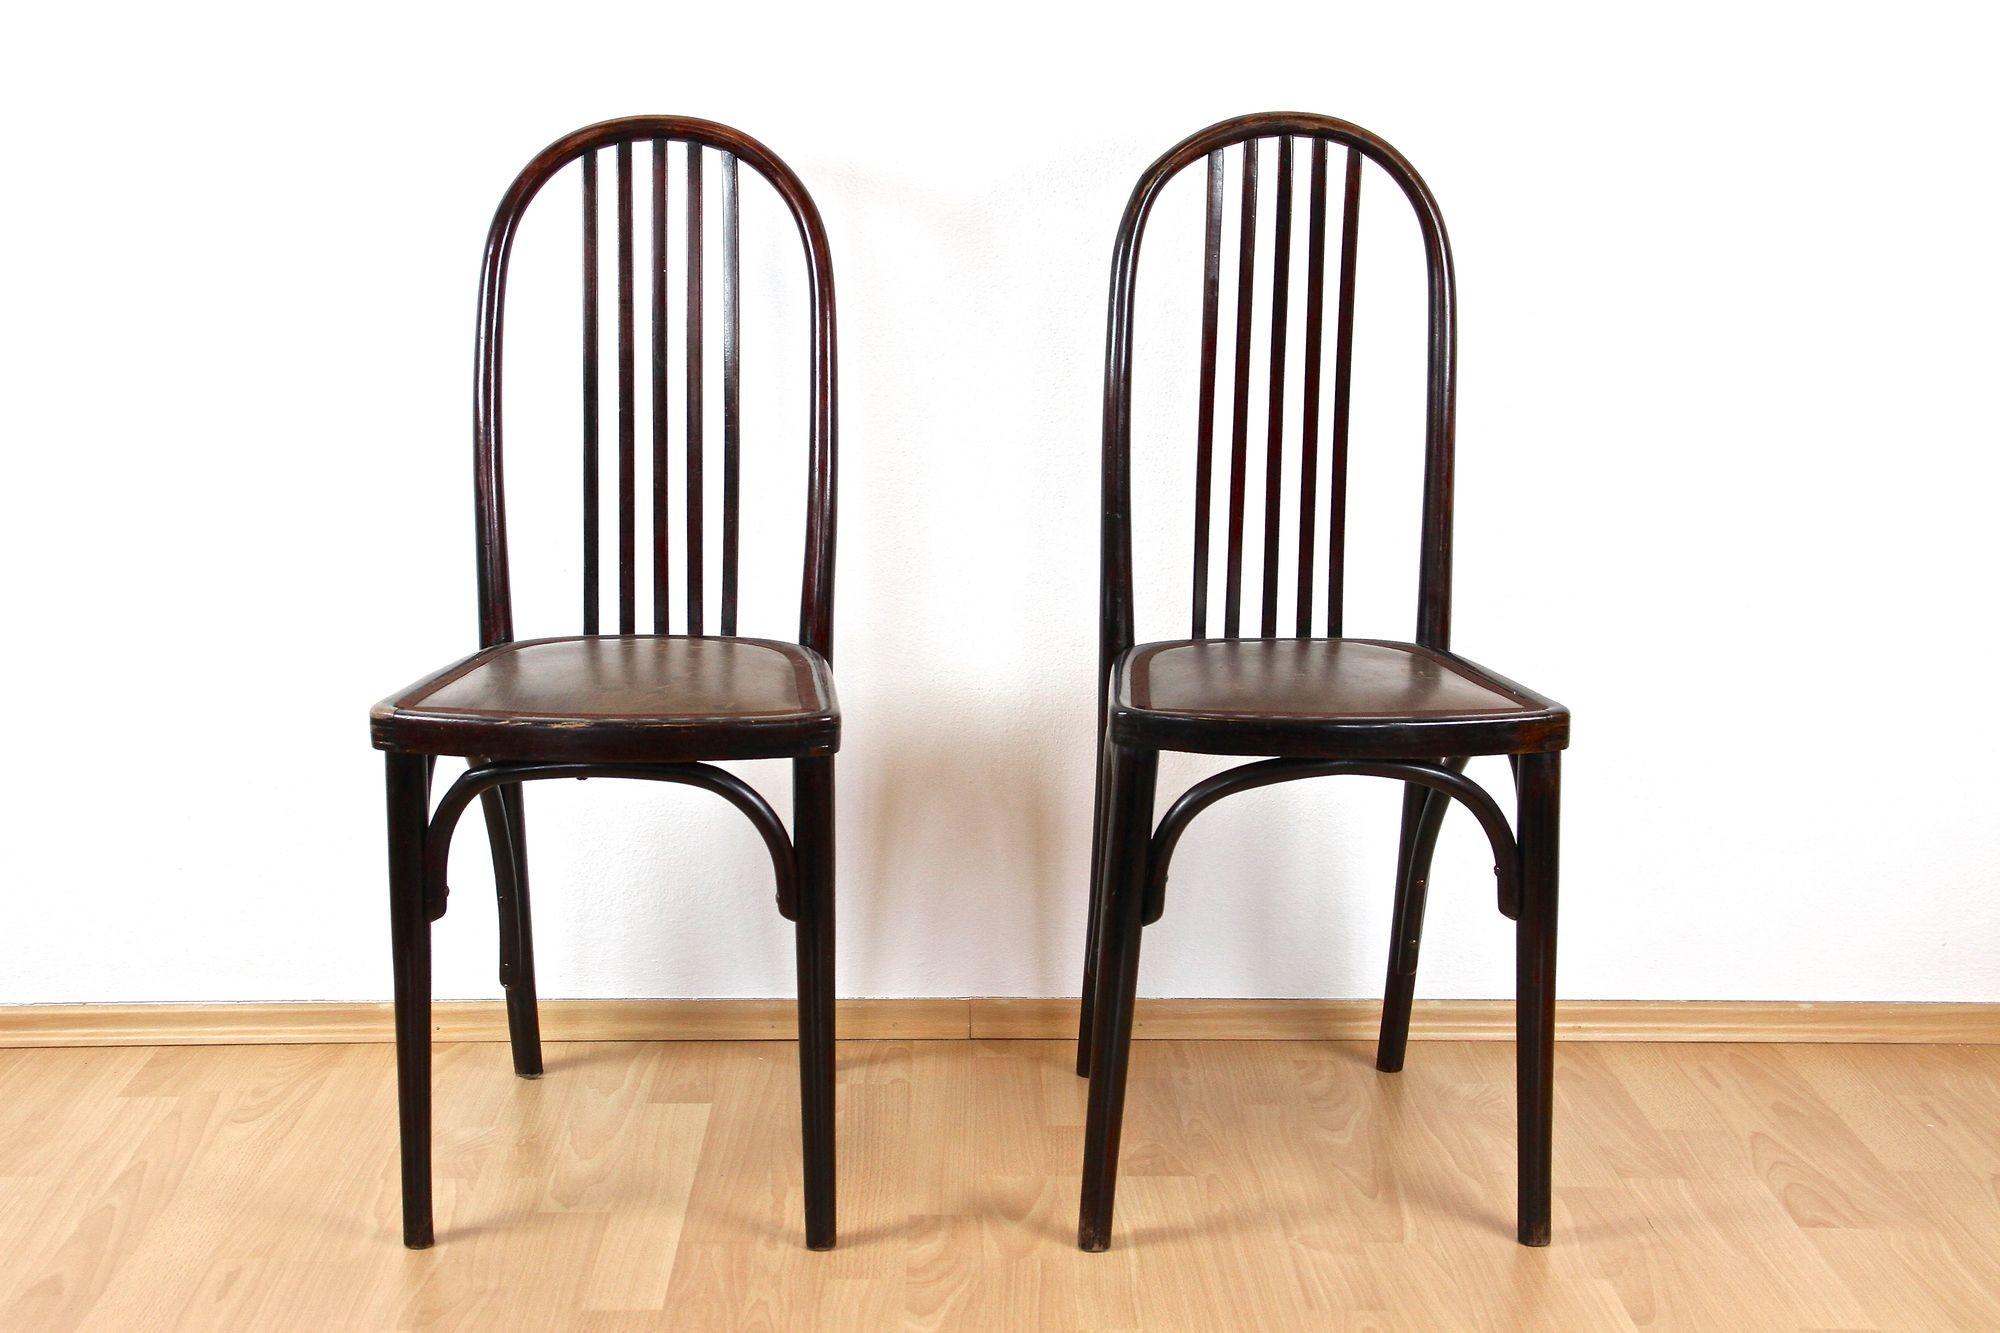 Très rare paire de la première édition ( !) de chaises en bois courbé de Thonet du début du 20e siècle, produites par Thonet en Bohemia. Conçue vers 1906 par Josef Hoffmann, architecte autrichien de renommée mondiale et fondateur de la 